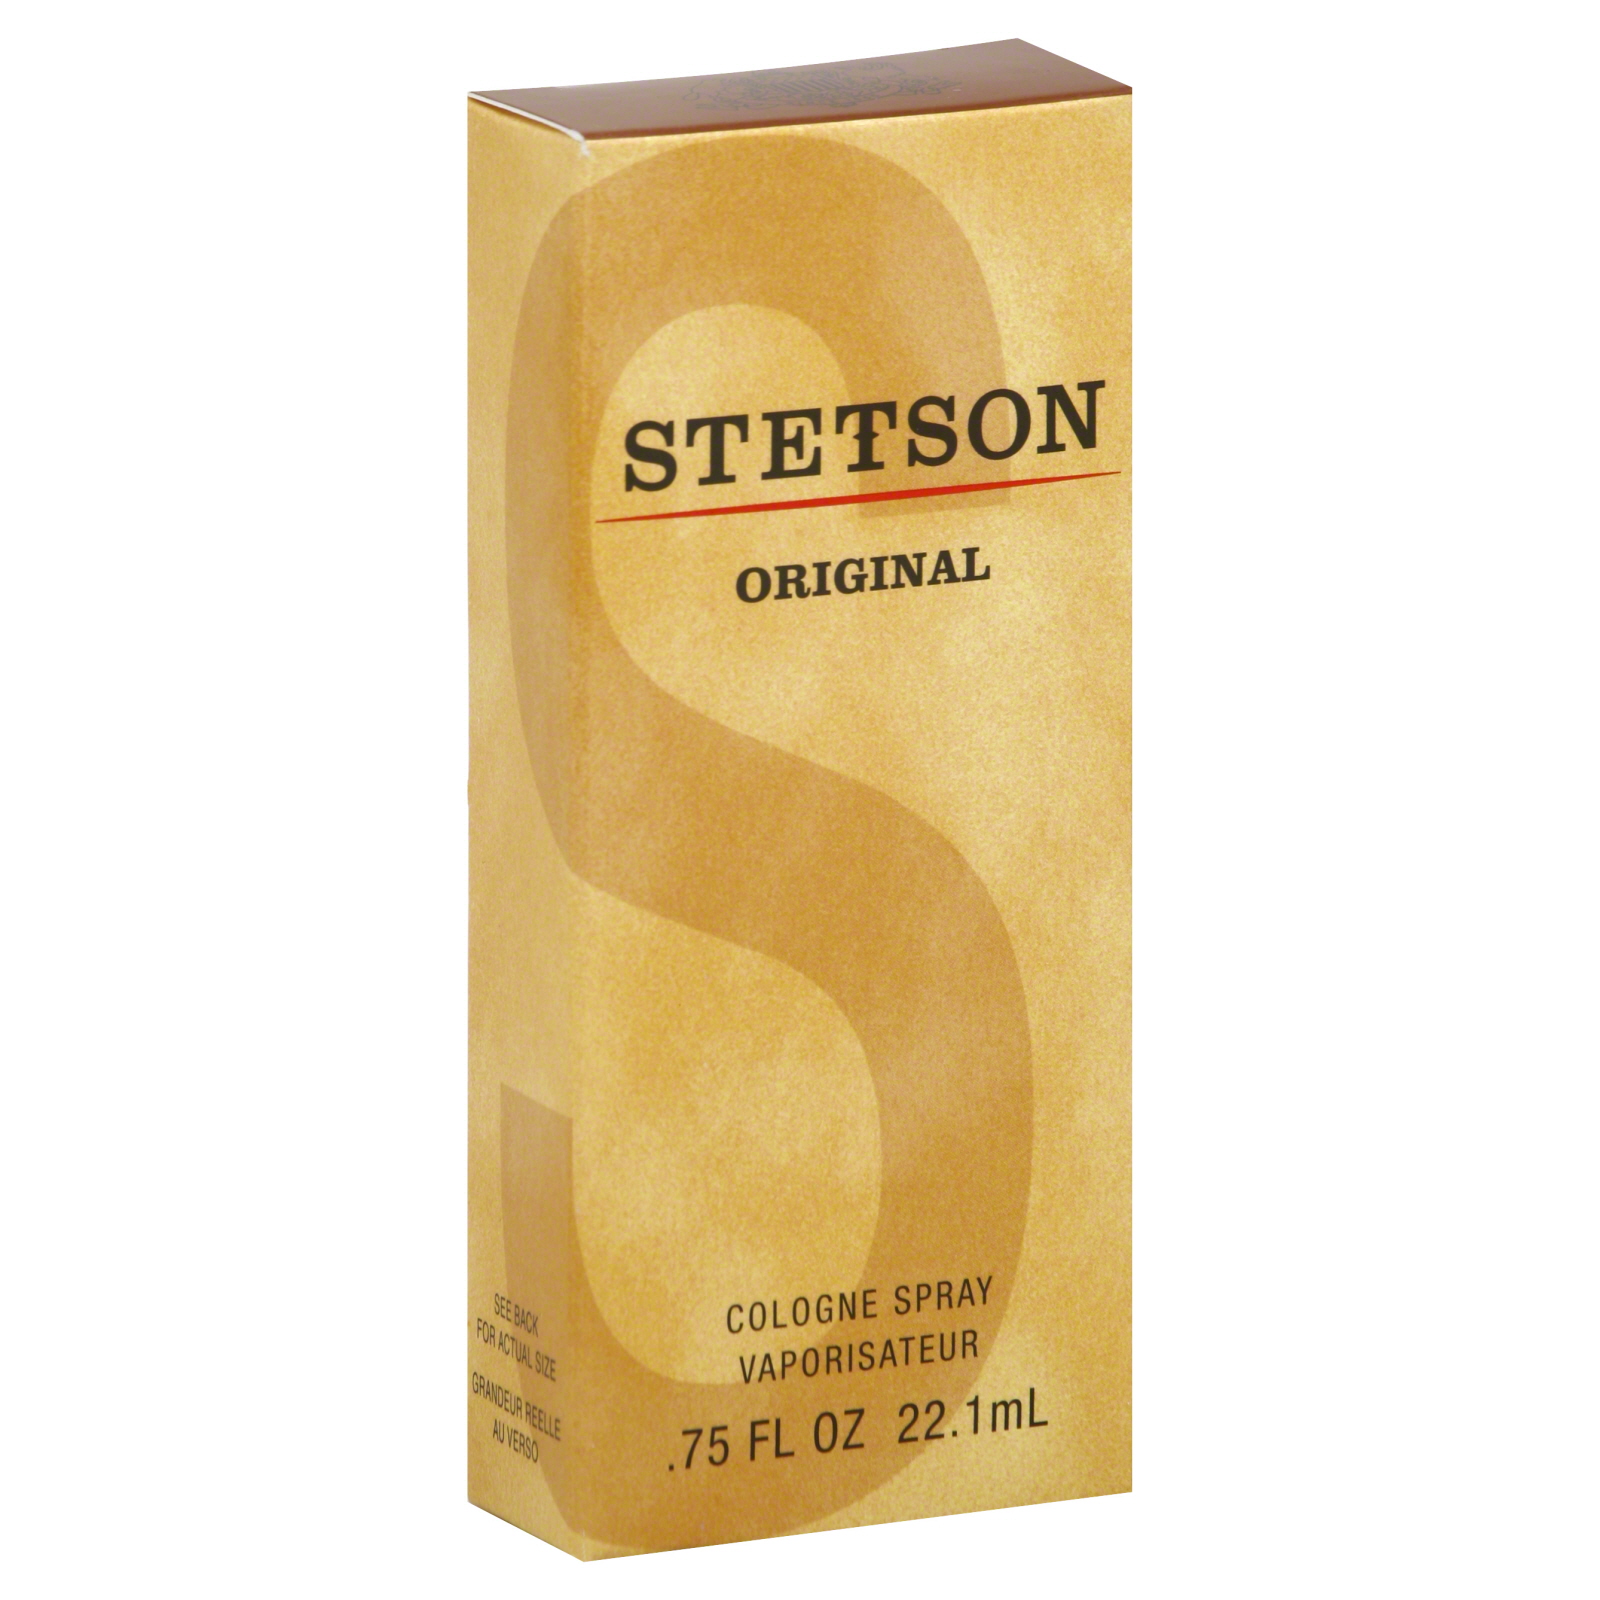 Stetson Cologne Spray, .75 fl oz (22.1 ml)